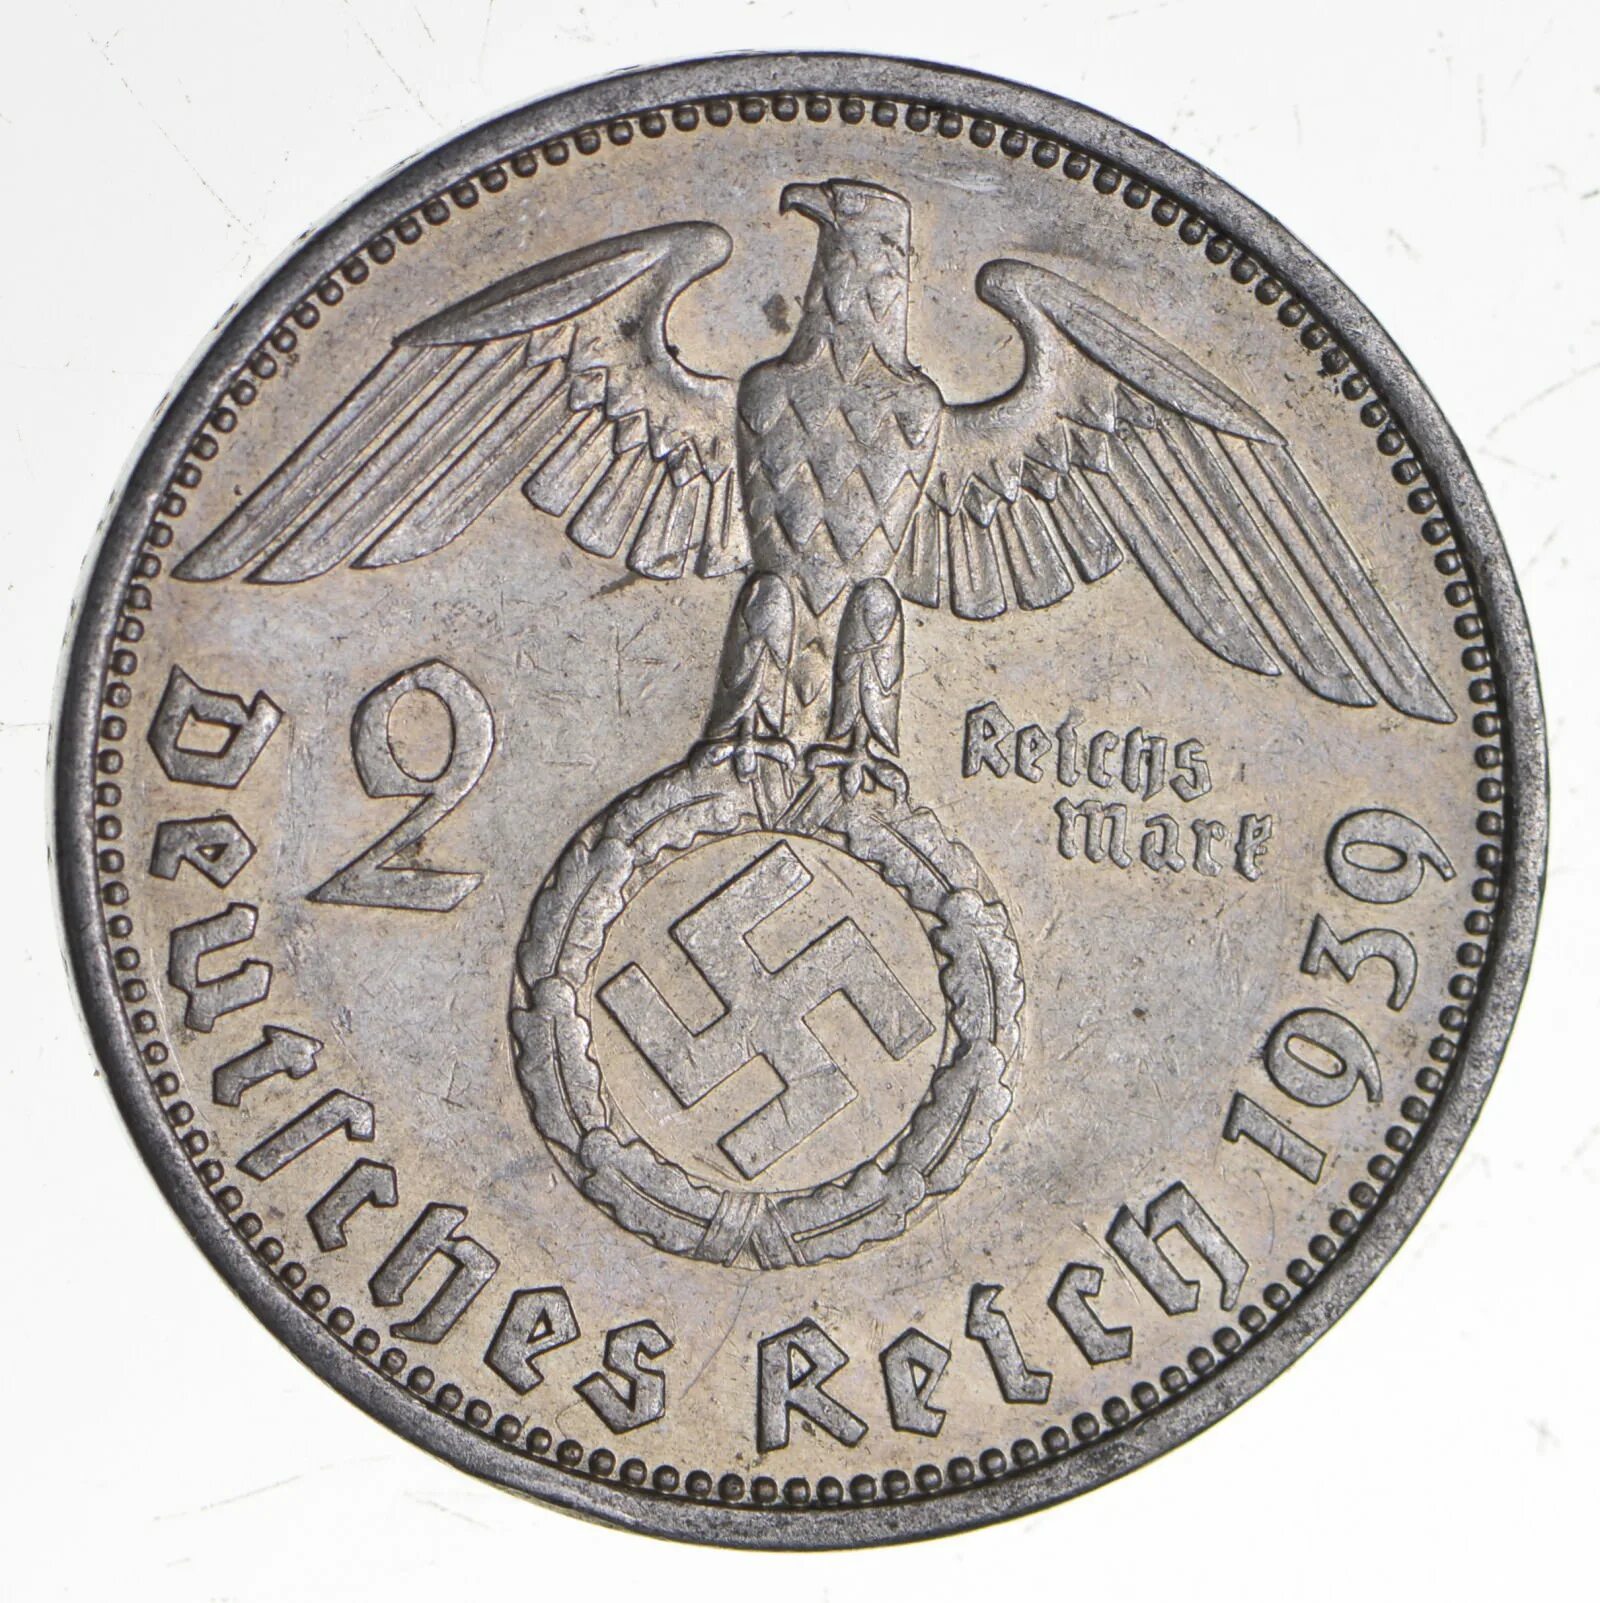 Монета немецкая 5 deutktnes Relin 1937. Монетка 1939 Германия. Немецкие монеты второй мировой войны. Монета 1937 немецкая со свастикой. 5 рублей 1945